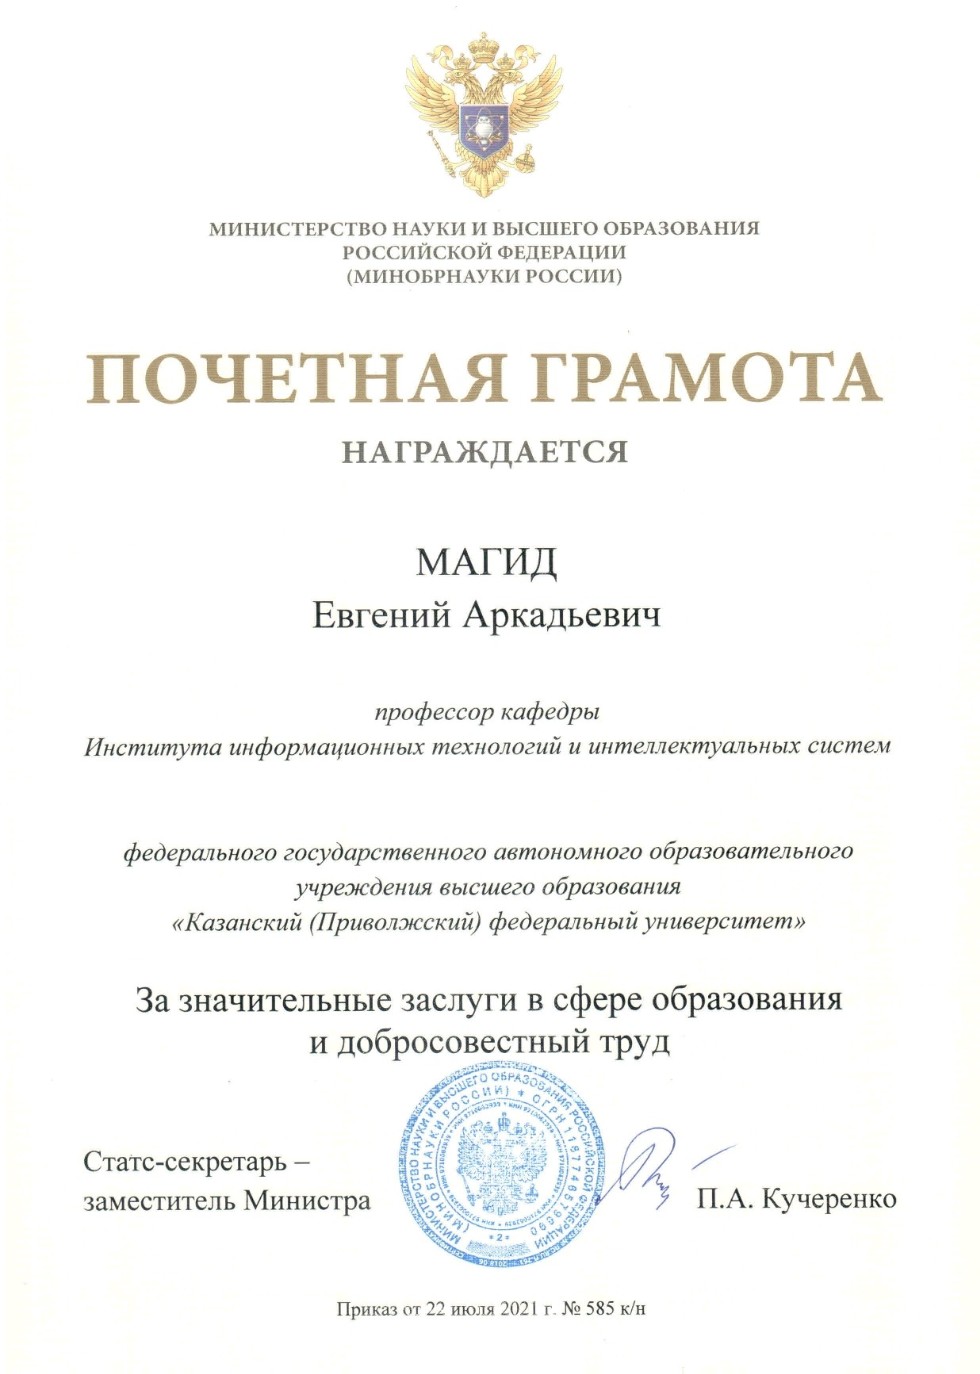 Евгений Магид был награжден почетной грамотой Министерства науки и высшего образования РФ ,ЛИРС, ИТИС, Минобрнауки